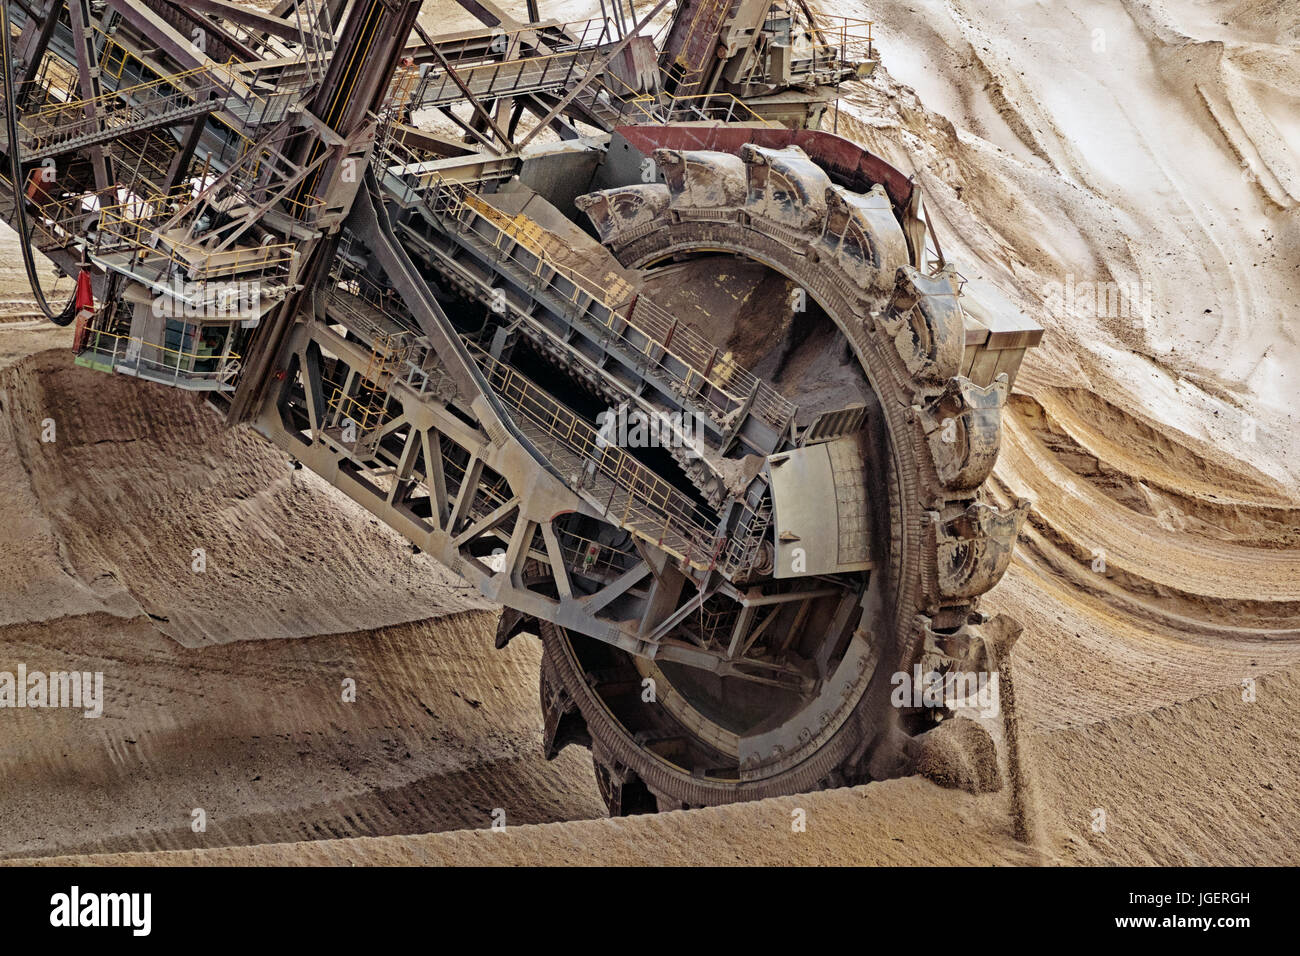 La cuchara excavadora de rueda la minería en una mina a cielo abierto de carbón marrón. Foto de stock